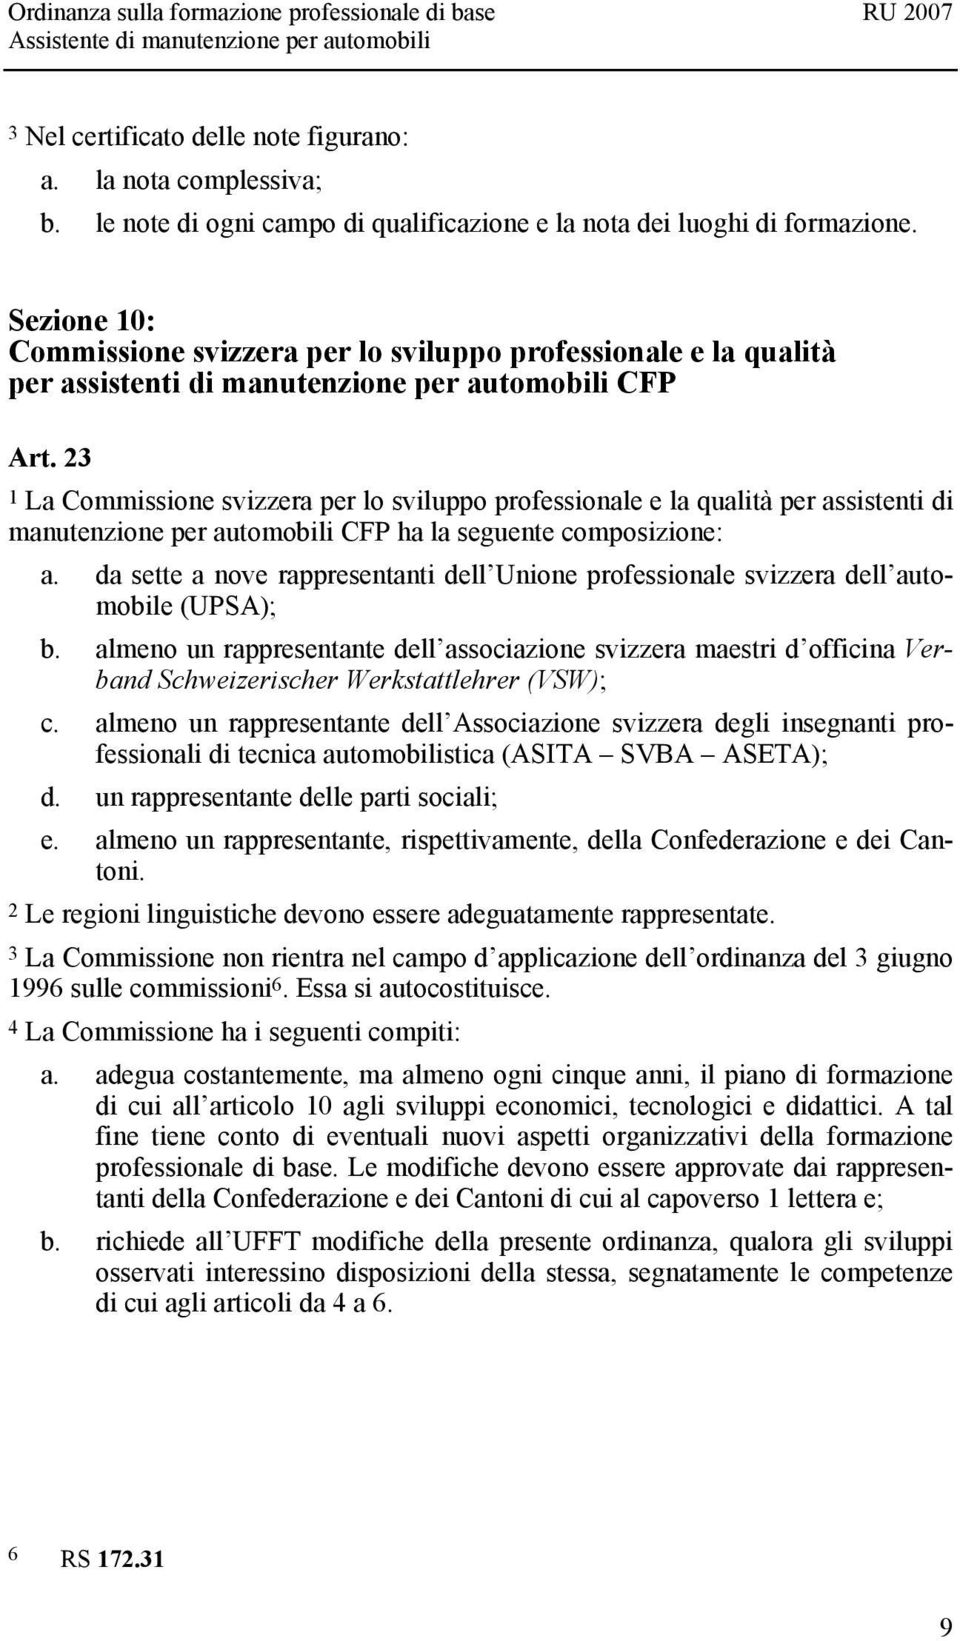 23 1 La Commissione svizzera per lo sviluppo professionale e la qualità per assistenti di manutenzione per automobili CFP ha la seguente composizione: a.